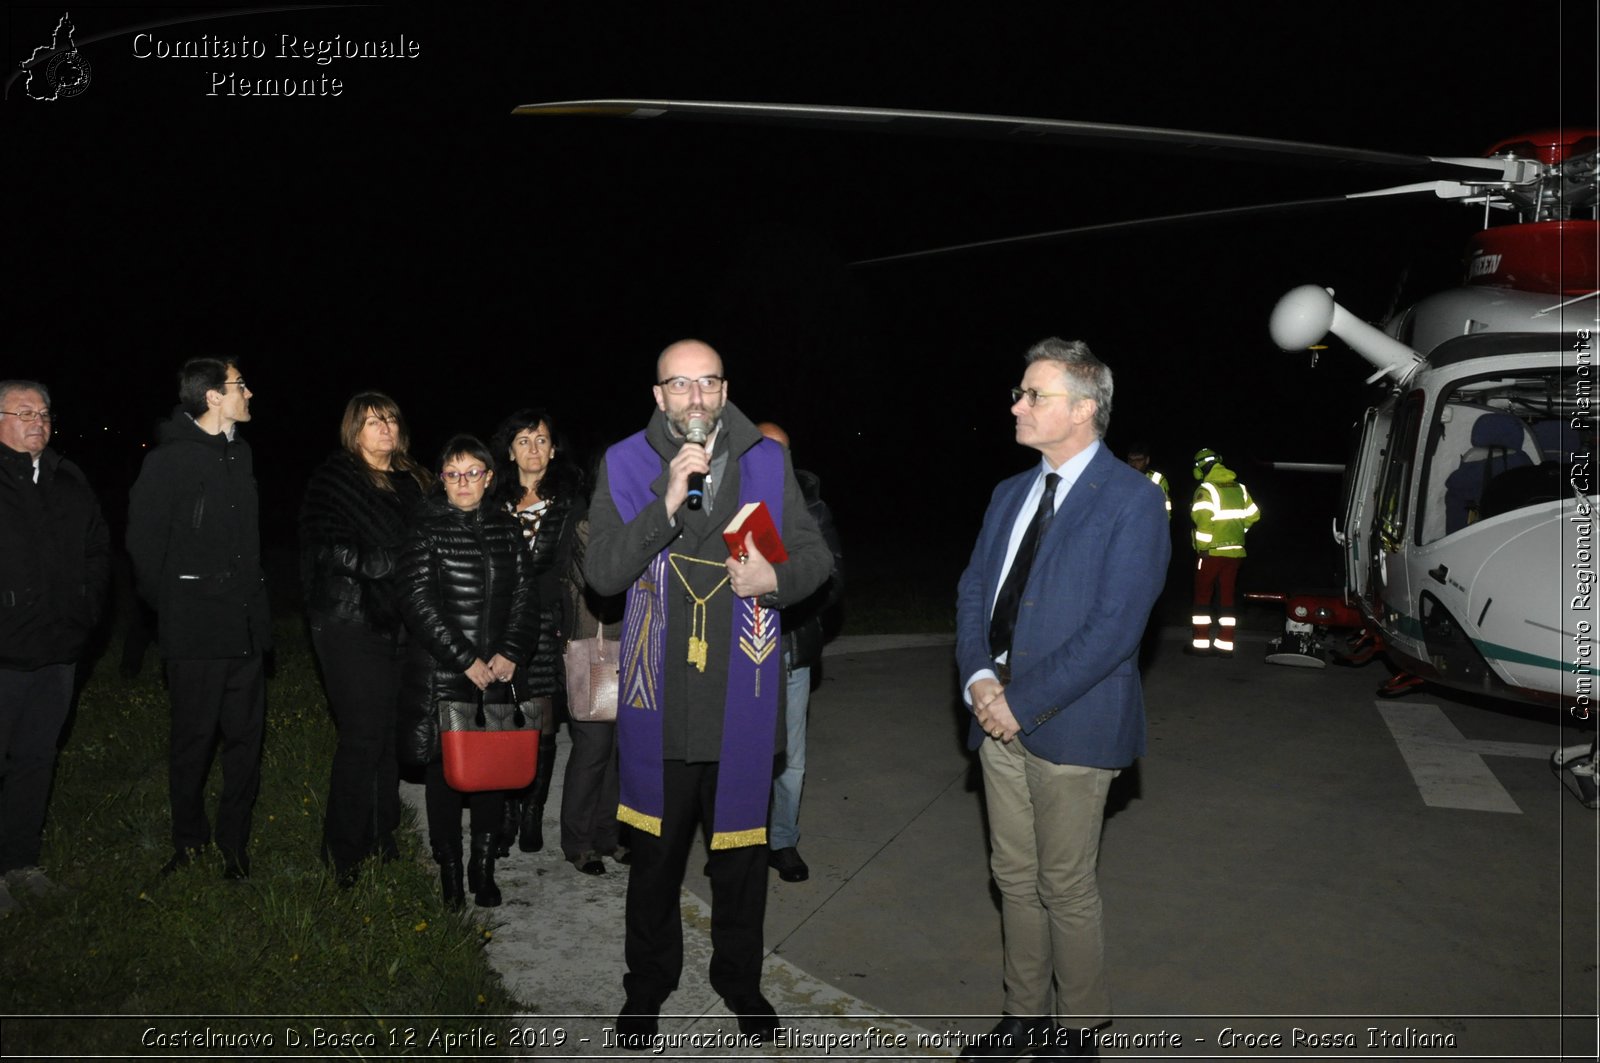 Castelnuovo D.Bosco 12 Aprile 2019 - Inaugurazione Elisuperfice notturna 118 Piemonte - Croce Rossa Italiana - Comitato Regionale del Piemonte